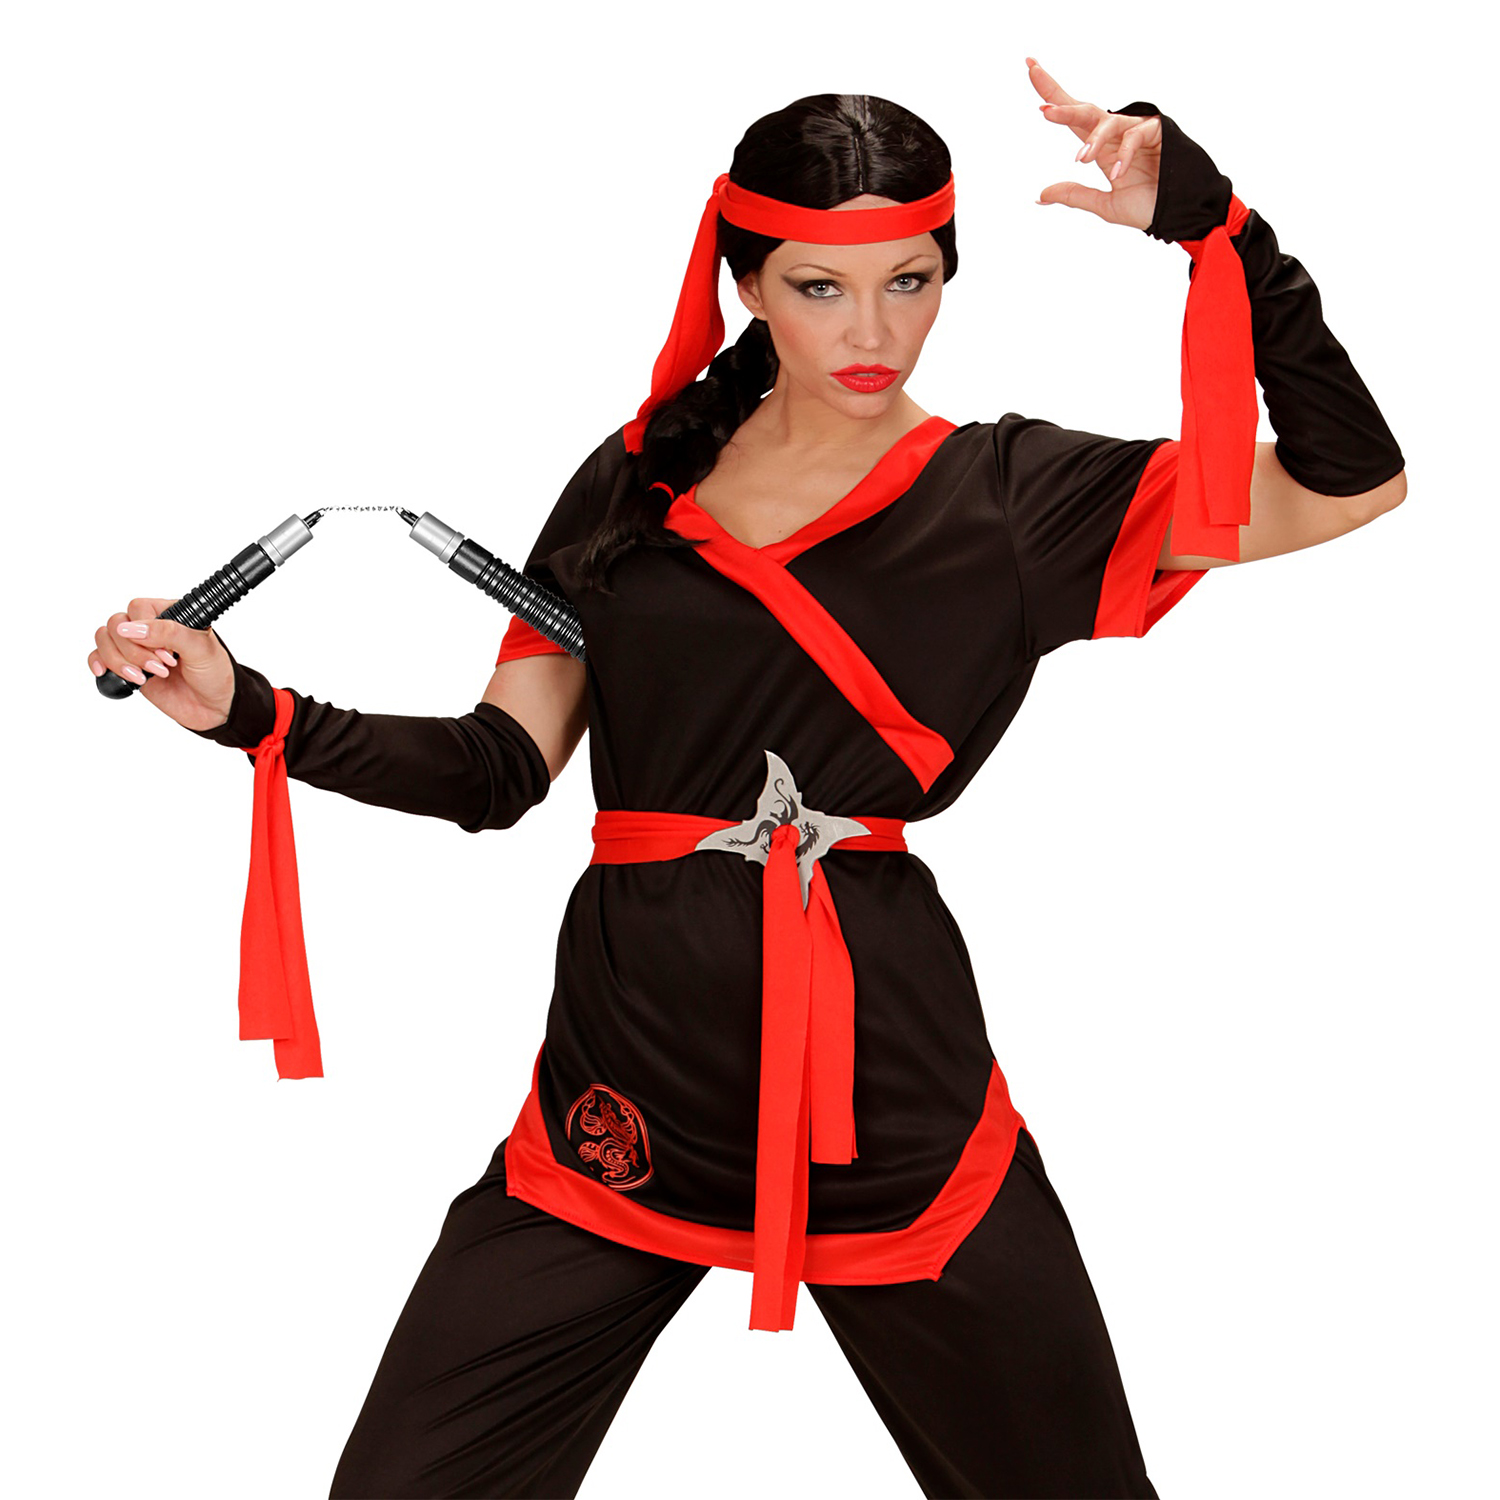 NEU Ninja-Kostüm-Zubehör Nunchaku / Spielzeug aus Kunststoff, Größe: ca. 19 cm Bild 2